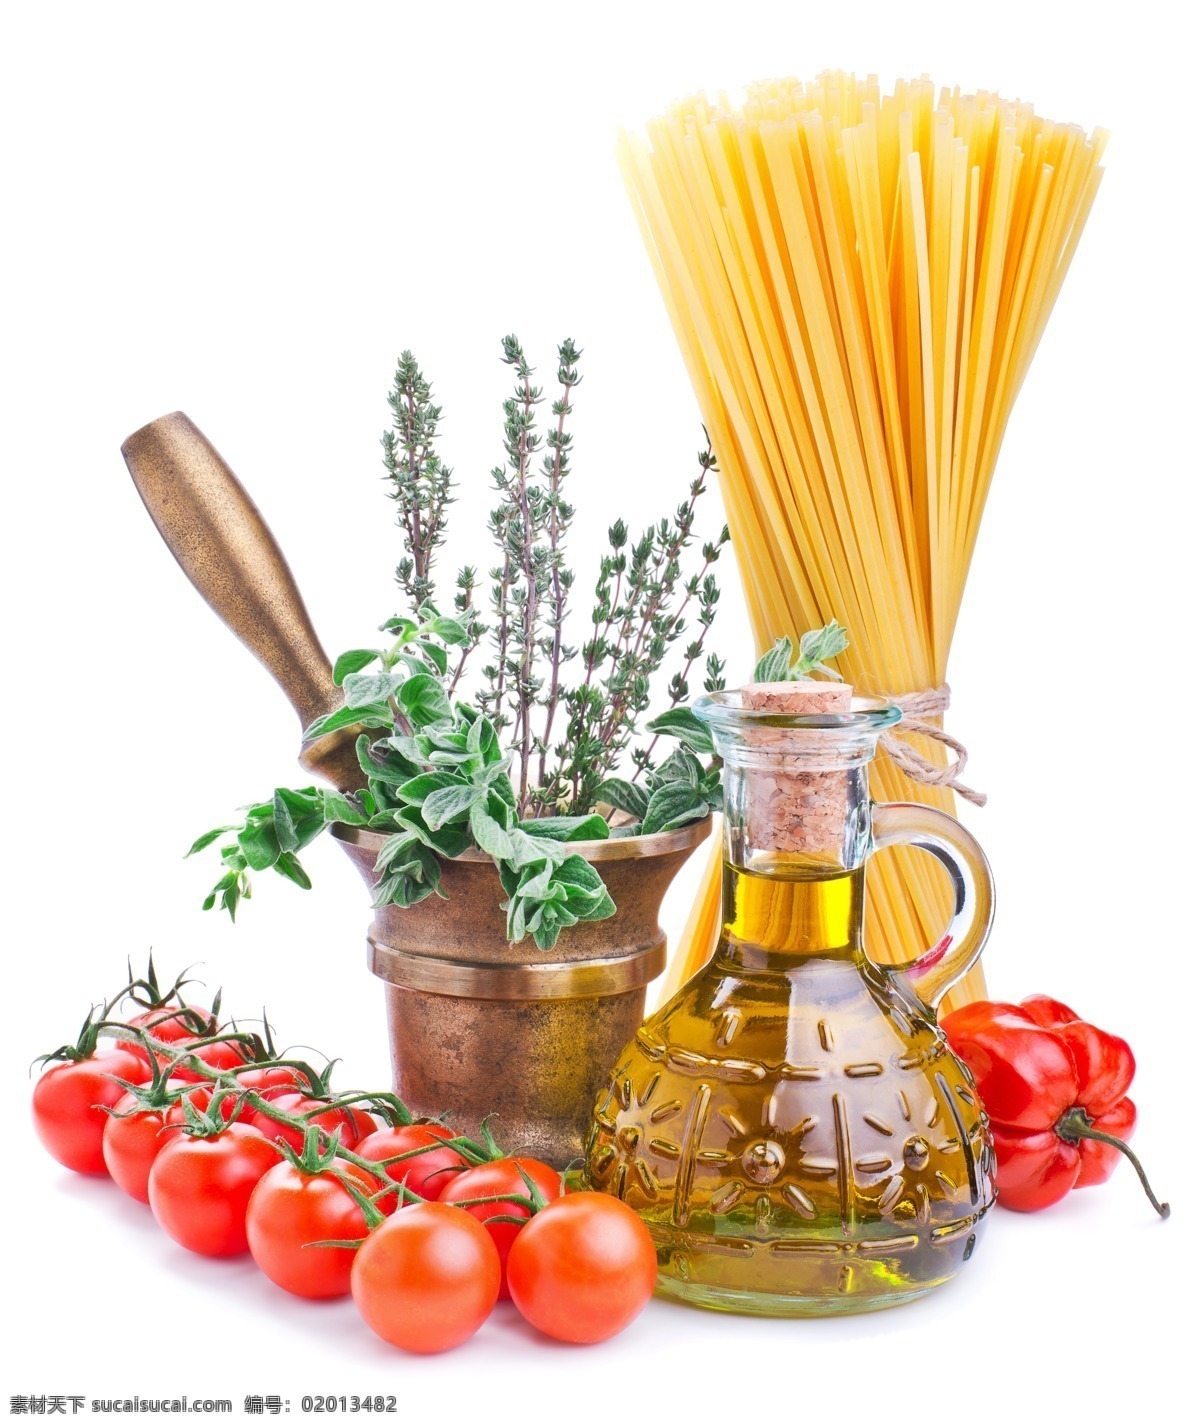 意大利 番茄 食用油 辣椒 西红柿 意大利面条 食材原料 餐饮美食